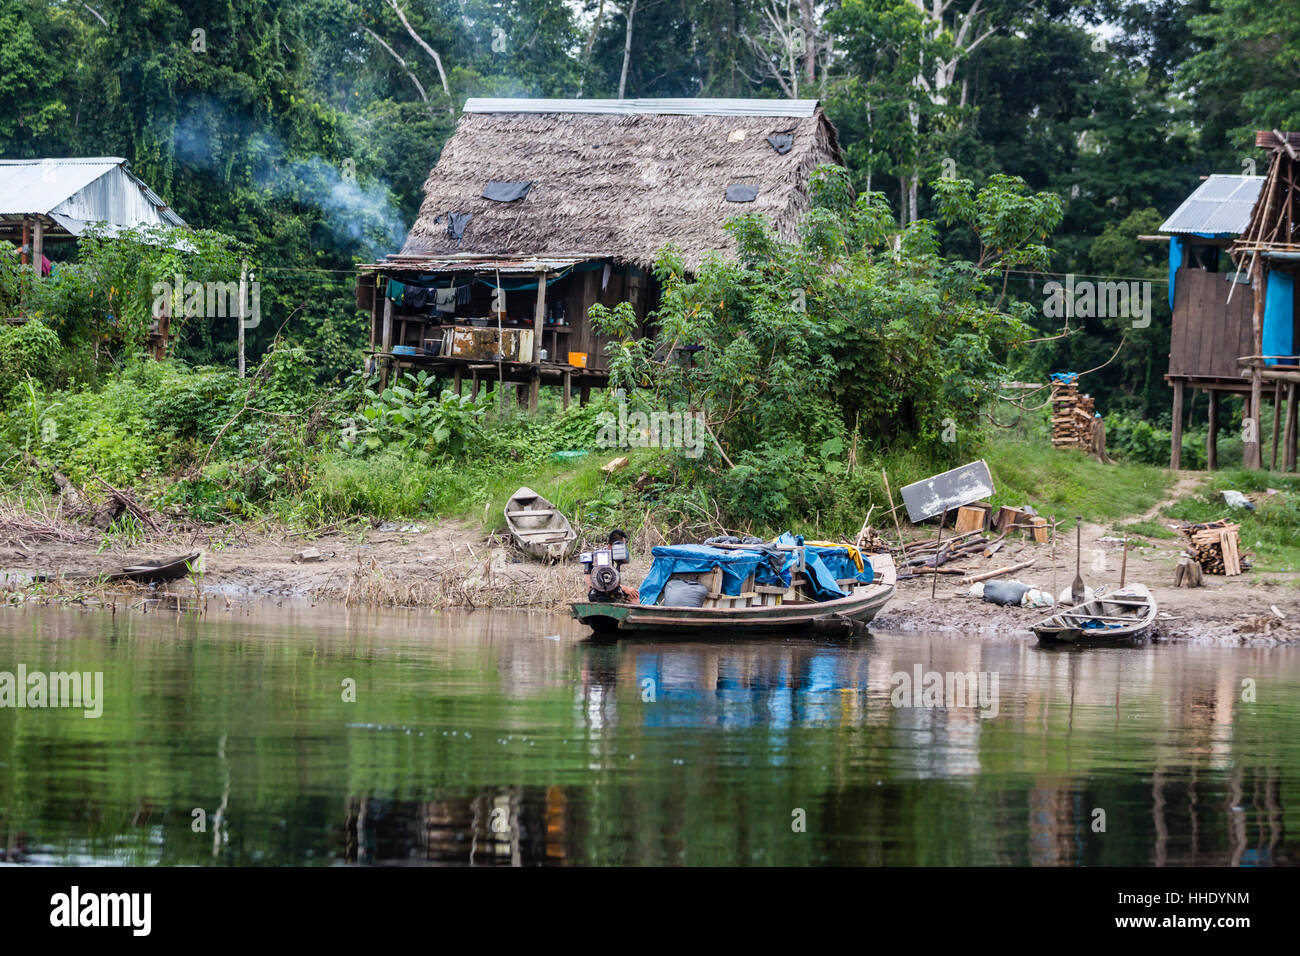 Small village on the El Dorado River, Upper Amazon River Basin, Loreto, Peru Stock Photo